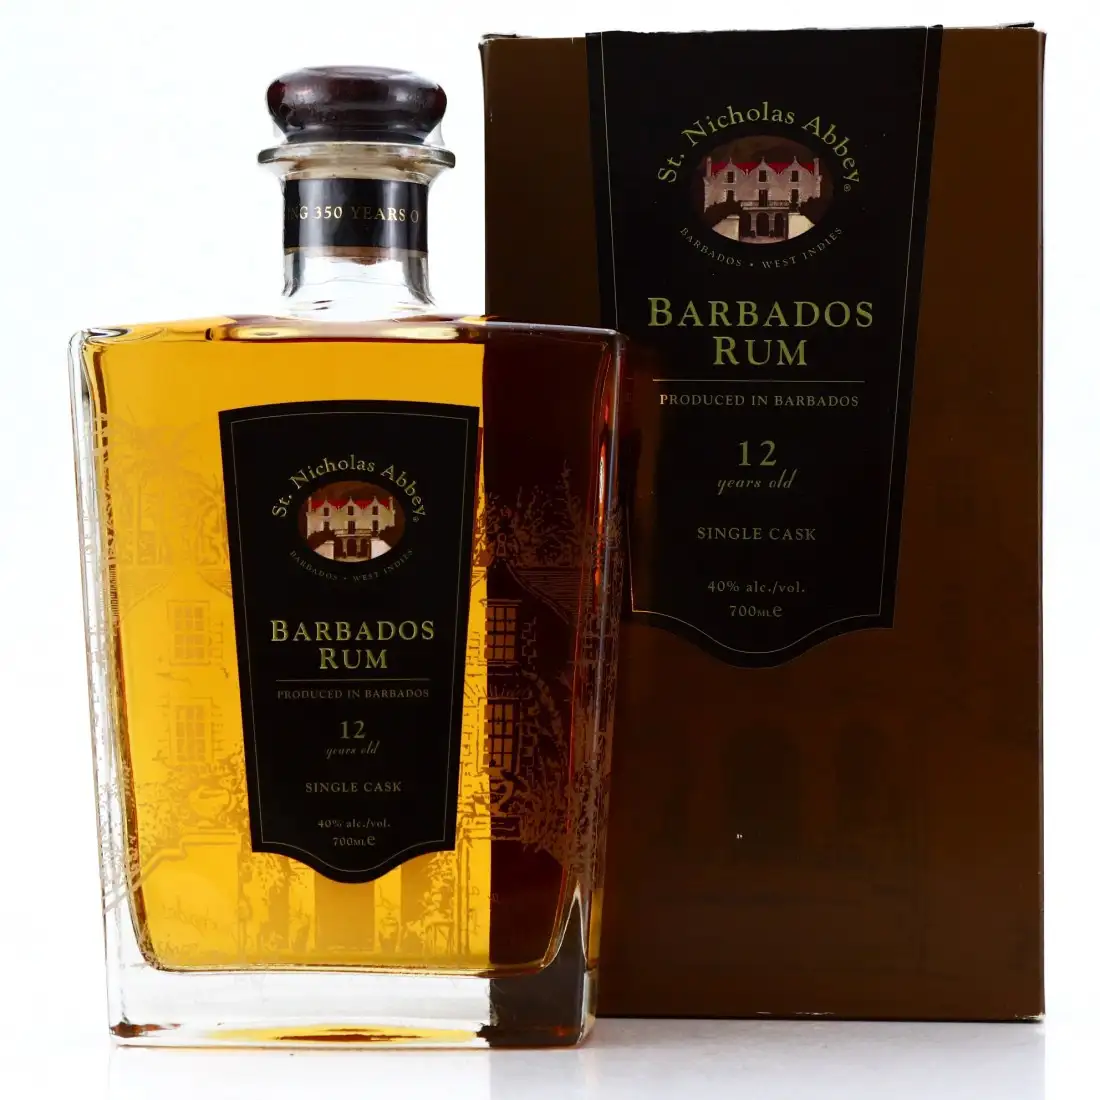 Barbados Rum with RumX the - RumX Ratings | Best Rums Find